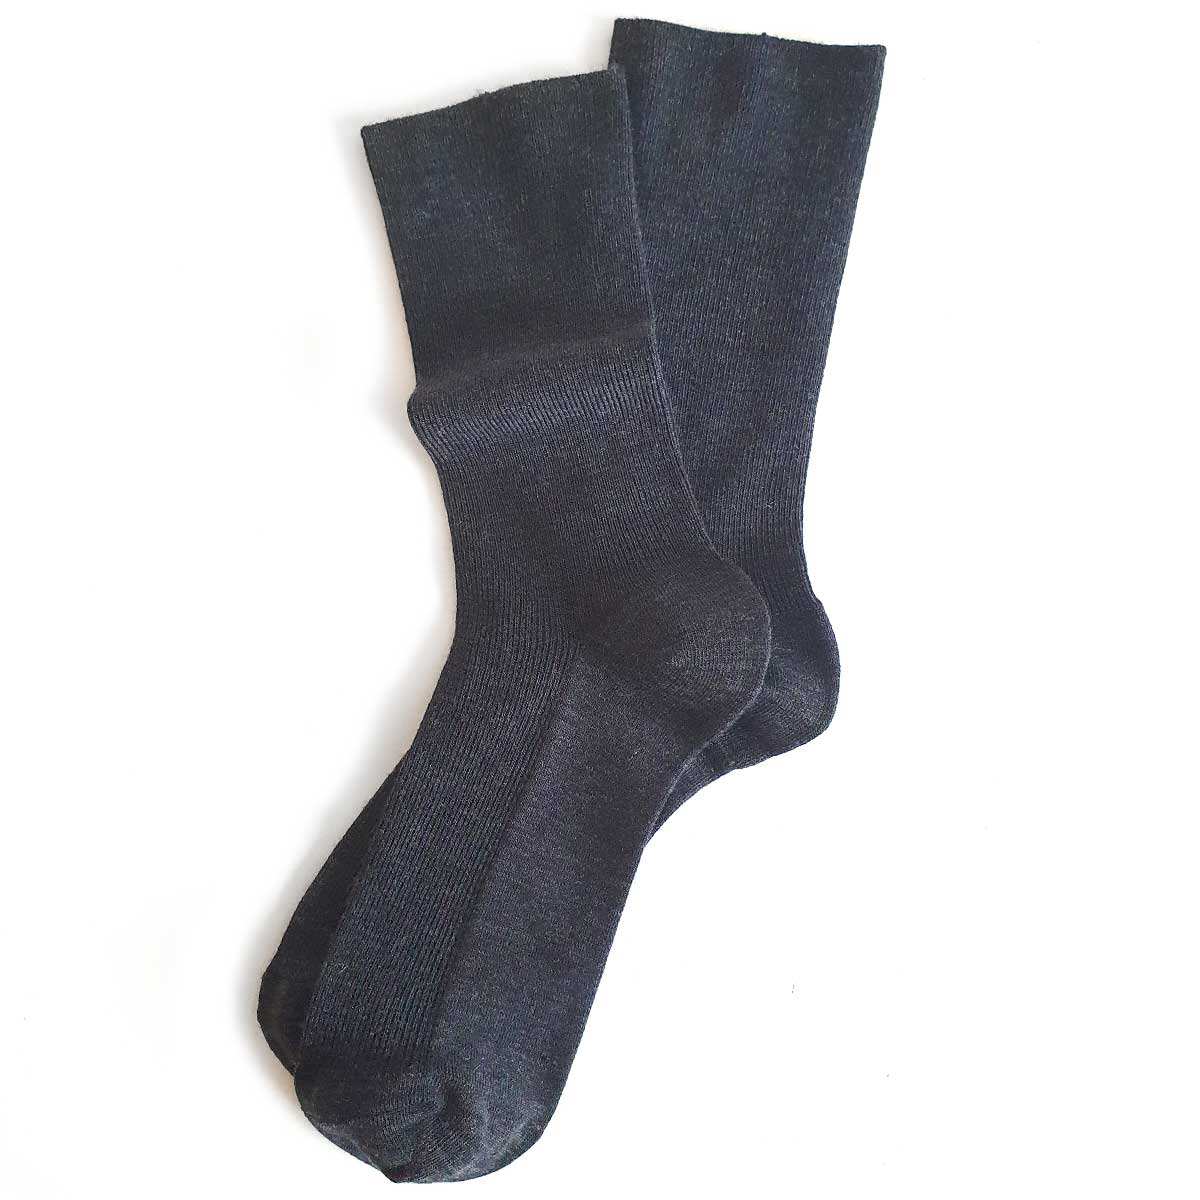 Tynne ullsokker til dame – sokker som ikke strammer